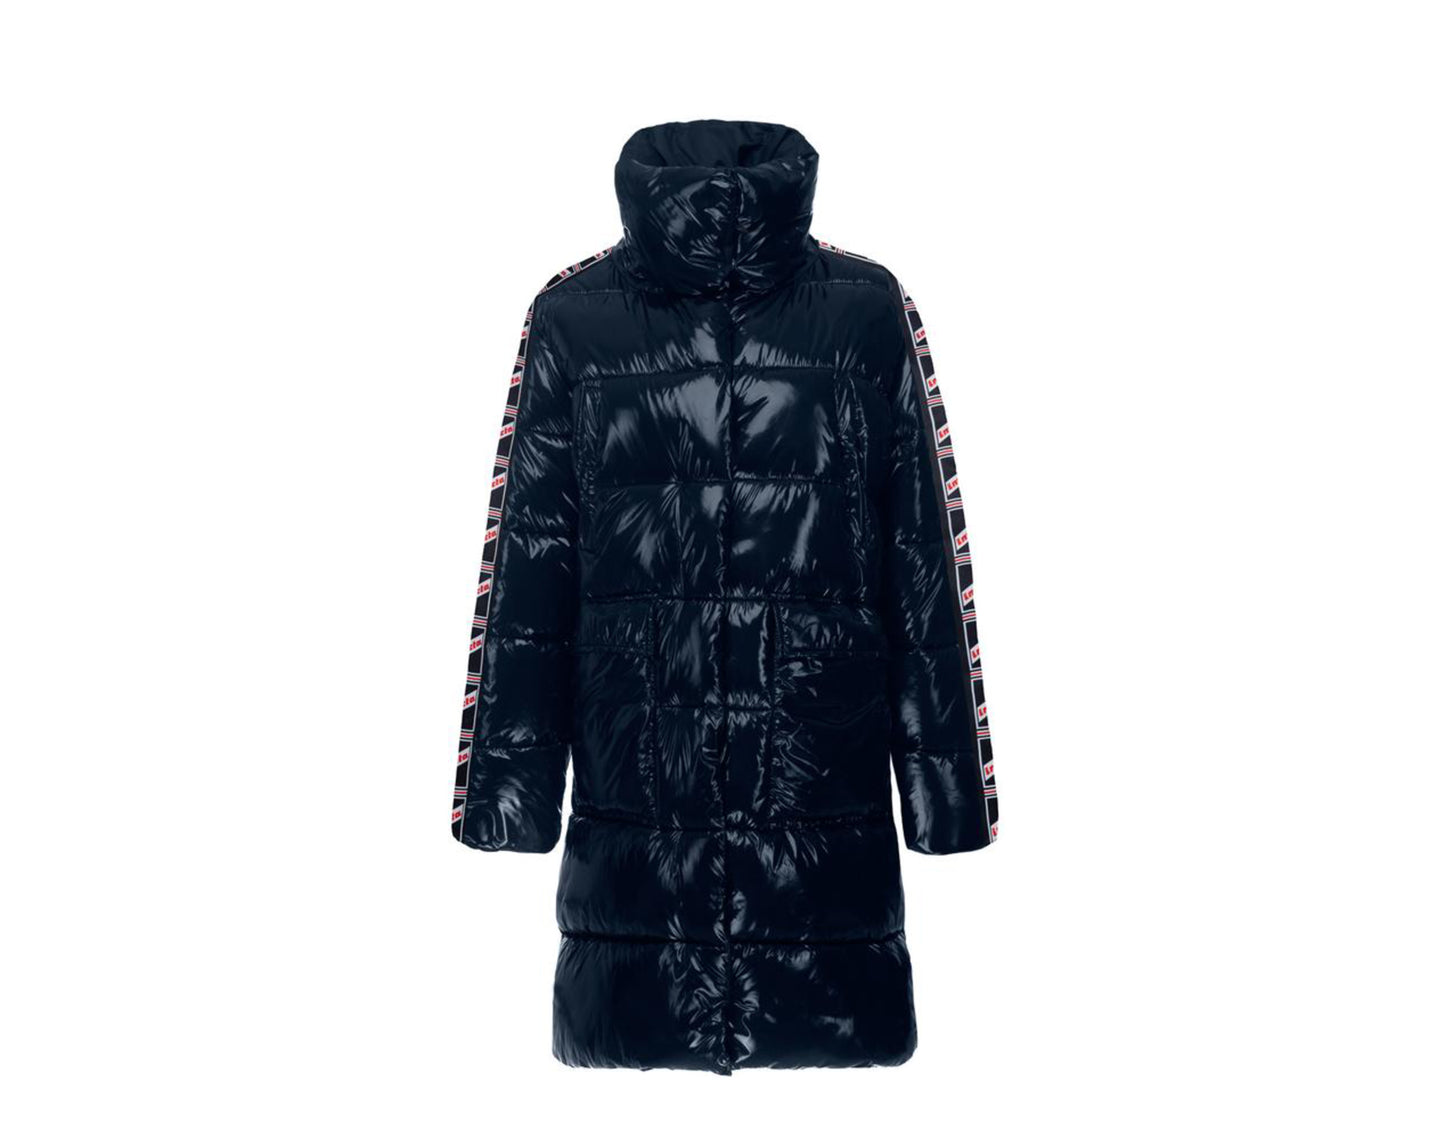 Invicta Lisa Long Glossy Coat Women's Jacket